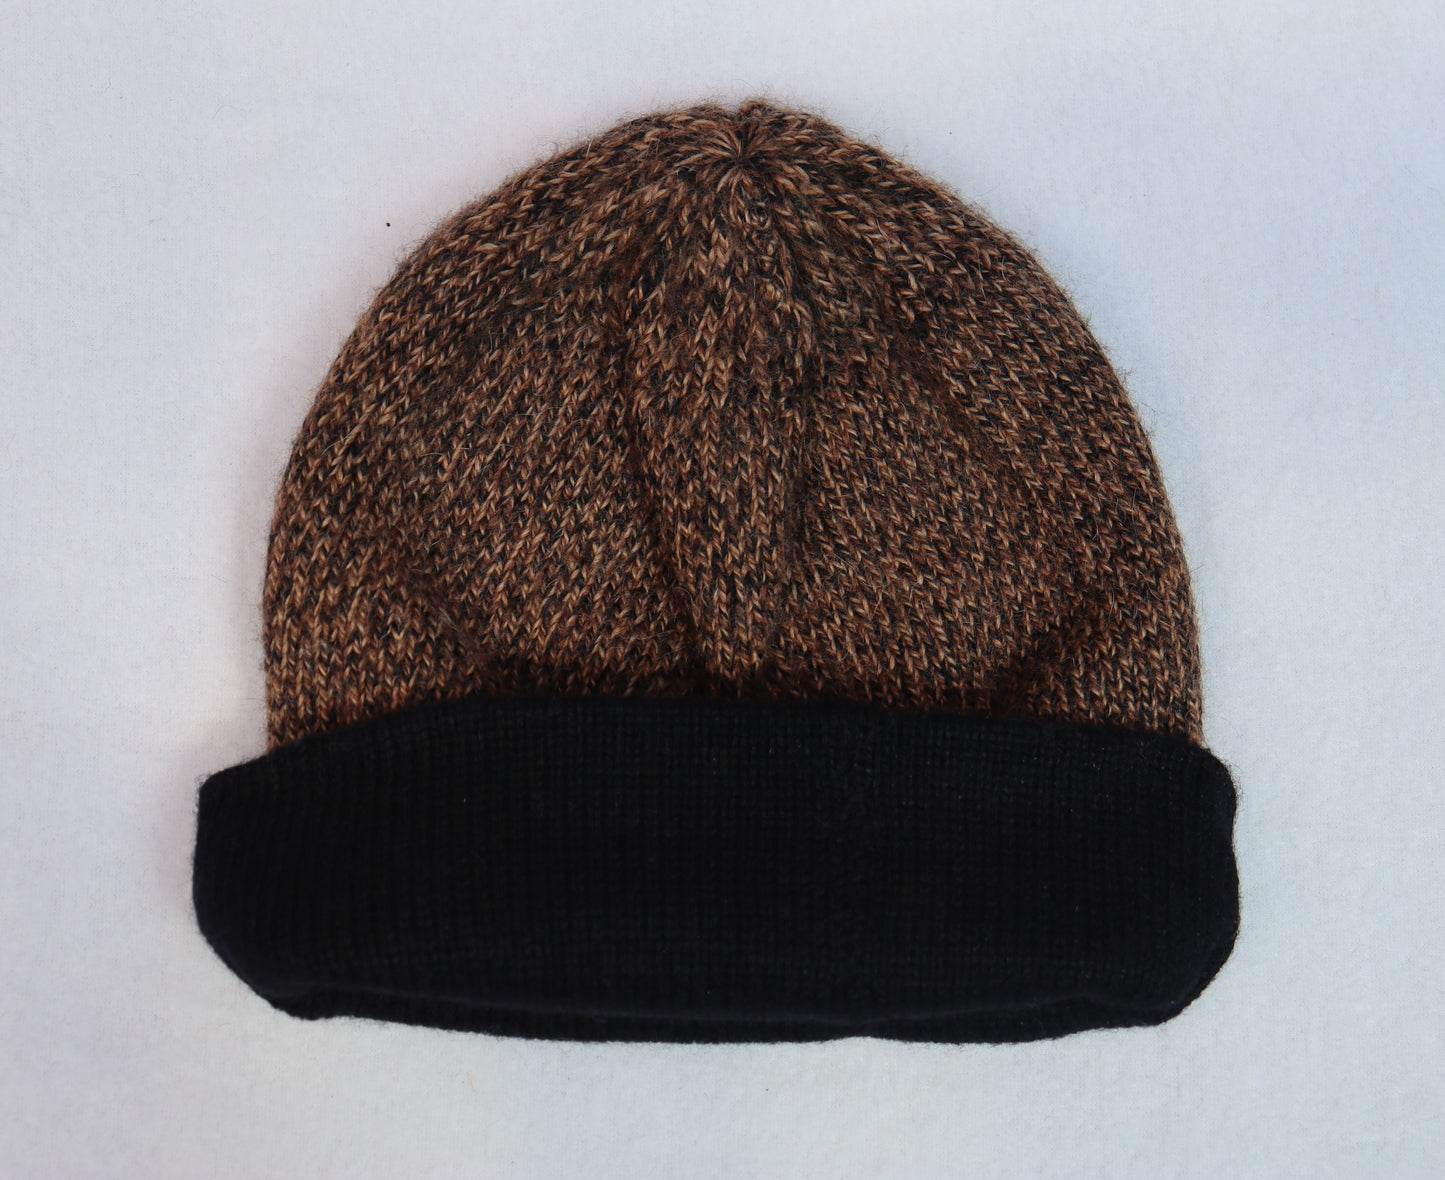 CH.204-Warm Hat